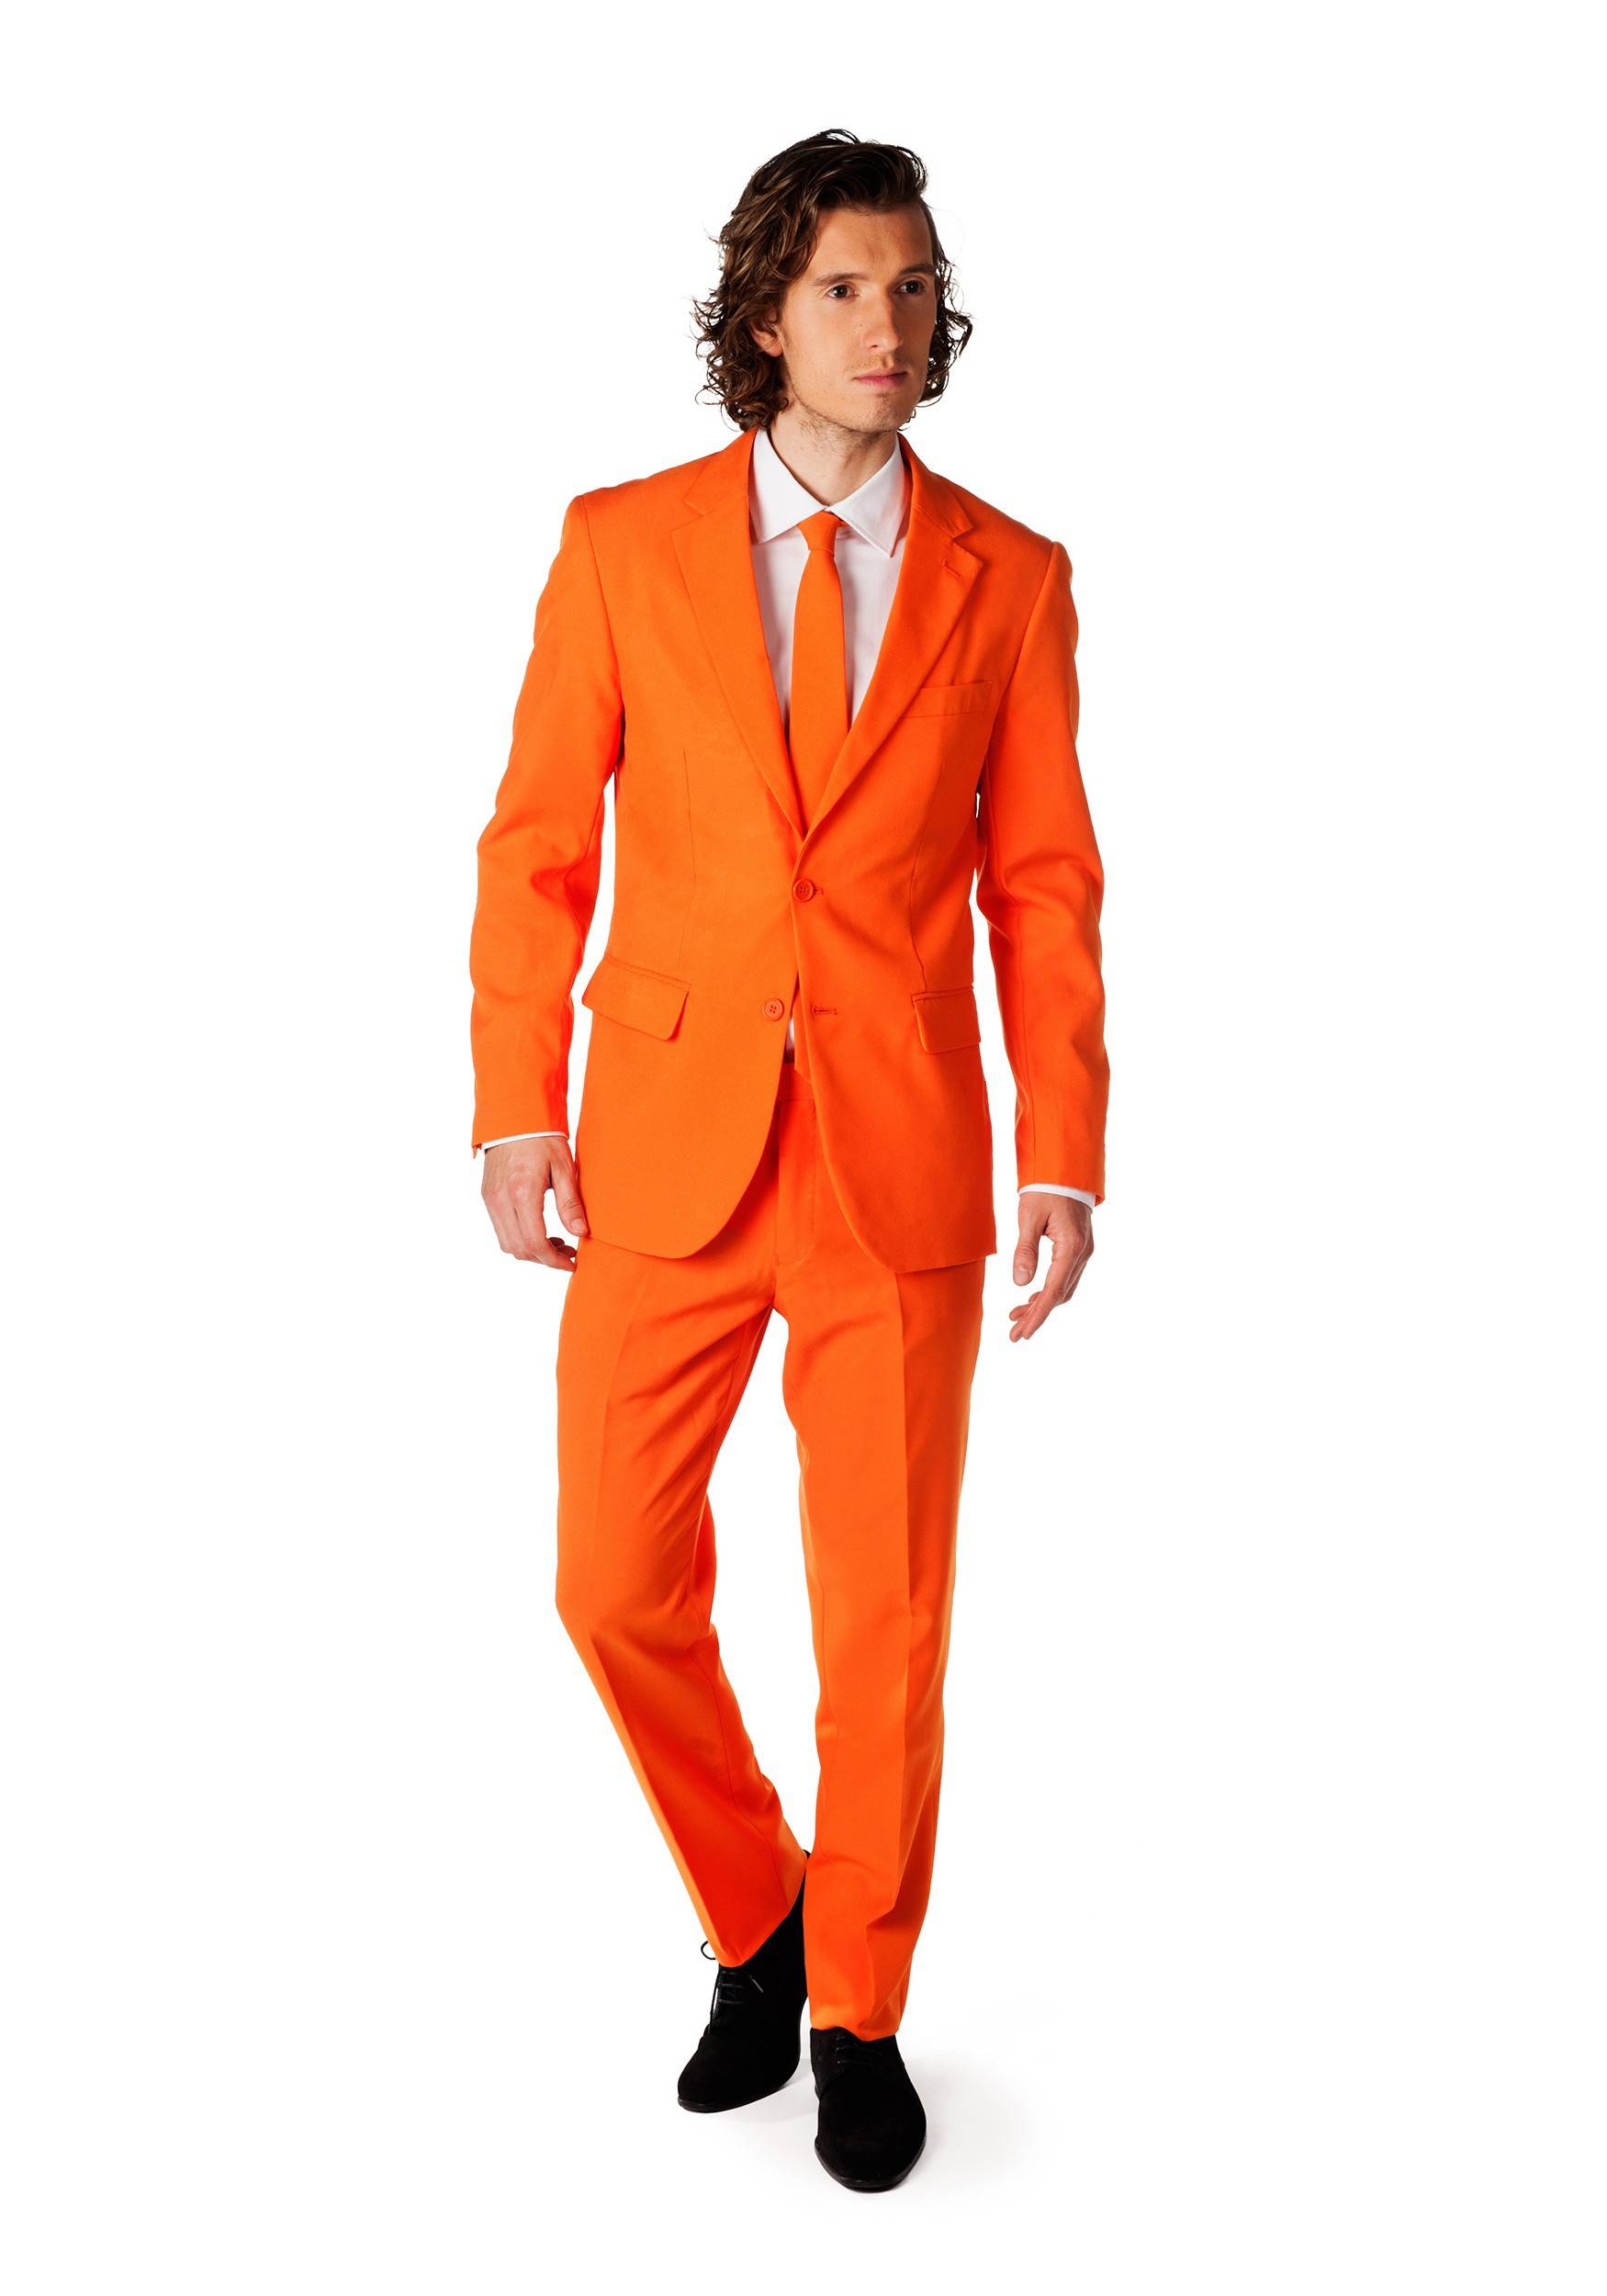 Какие цвета сочетаются с оранжевым в одежде